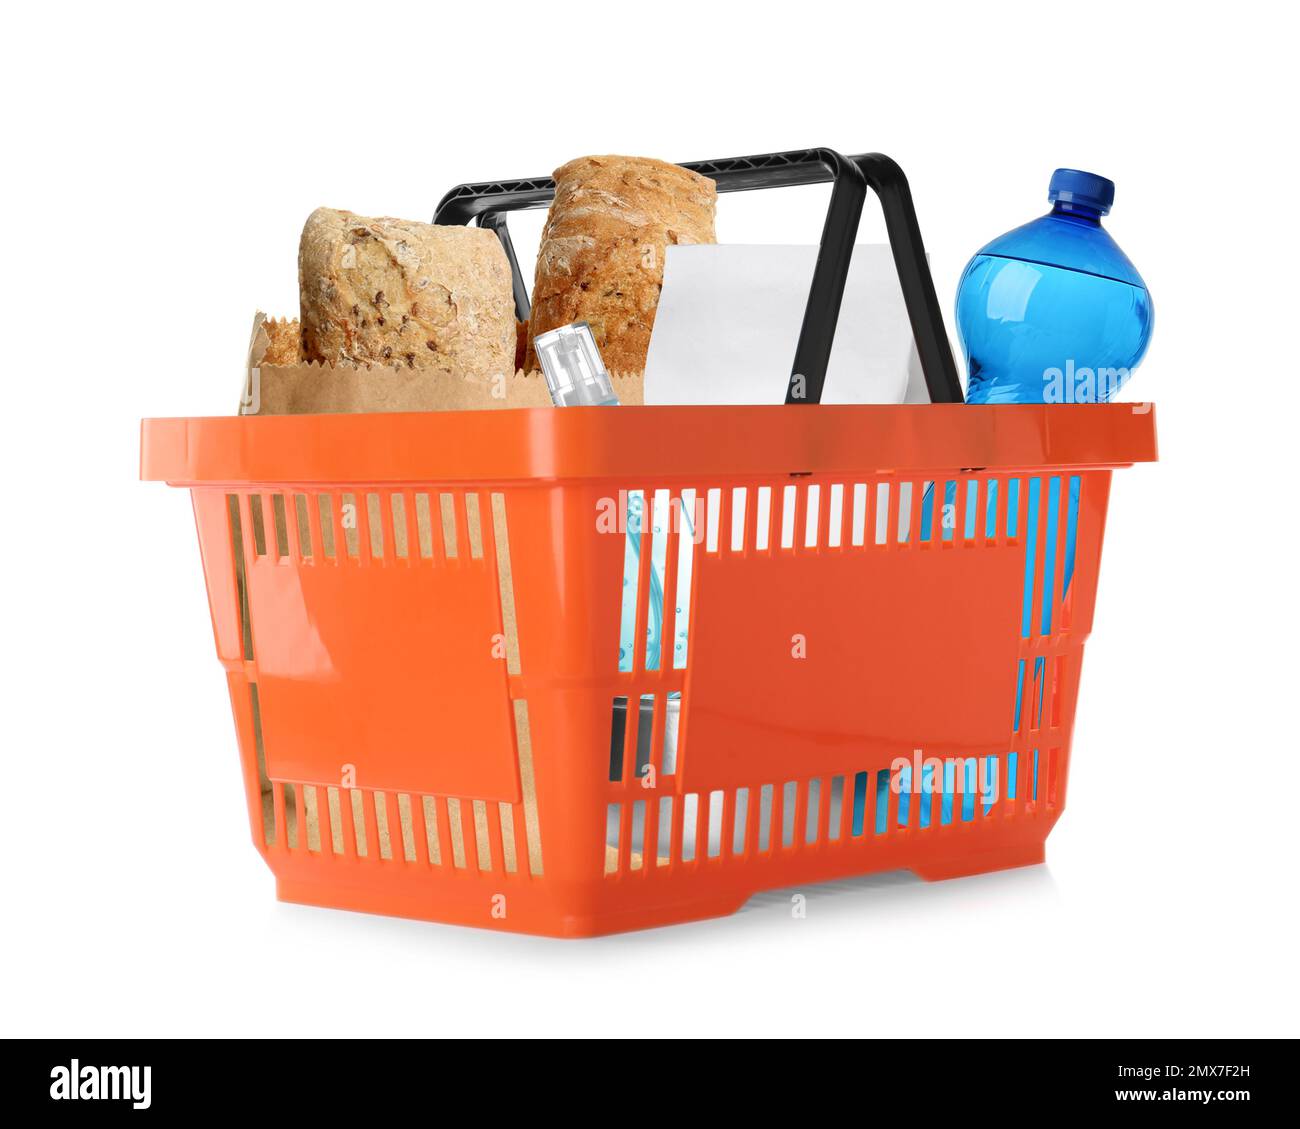 Einkaufskorb aus Kunststoff mit verschiedenen Produkten, isoliert